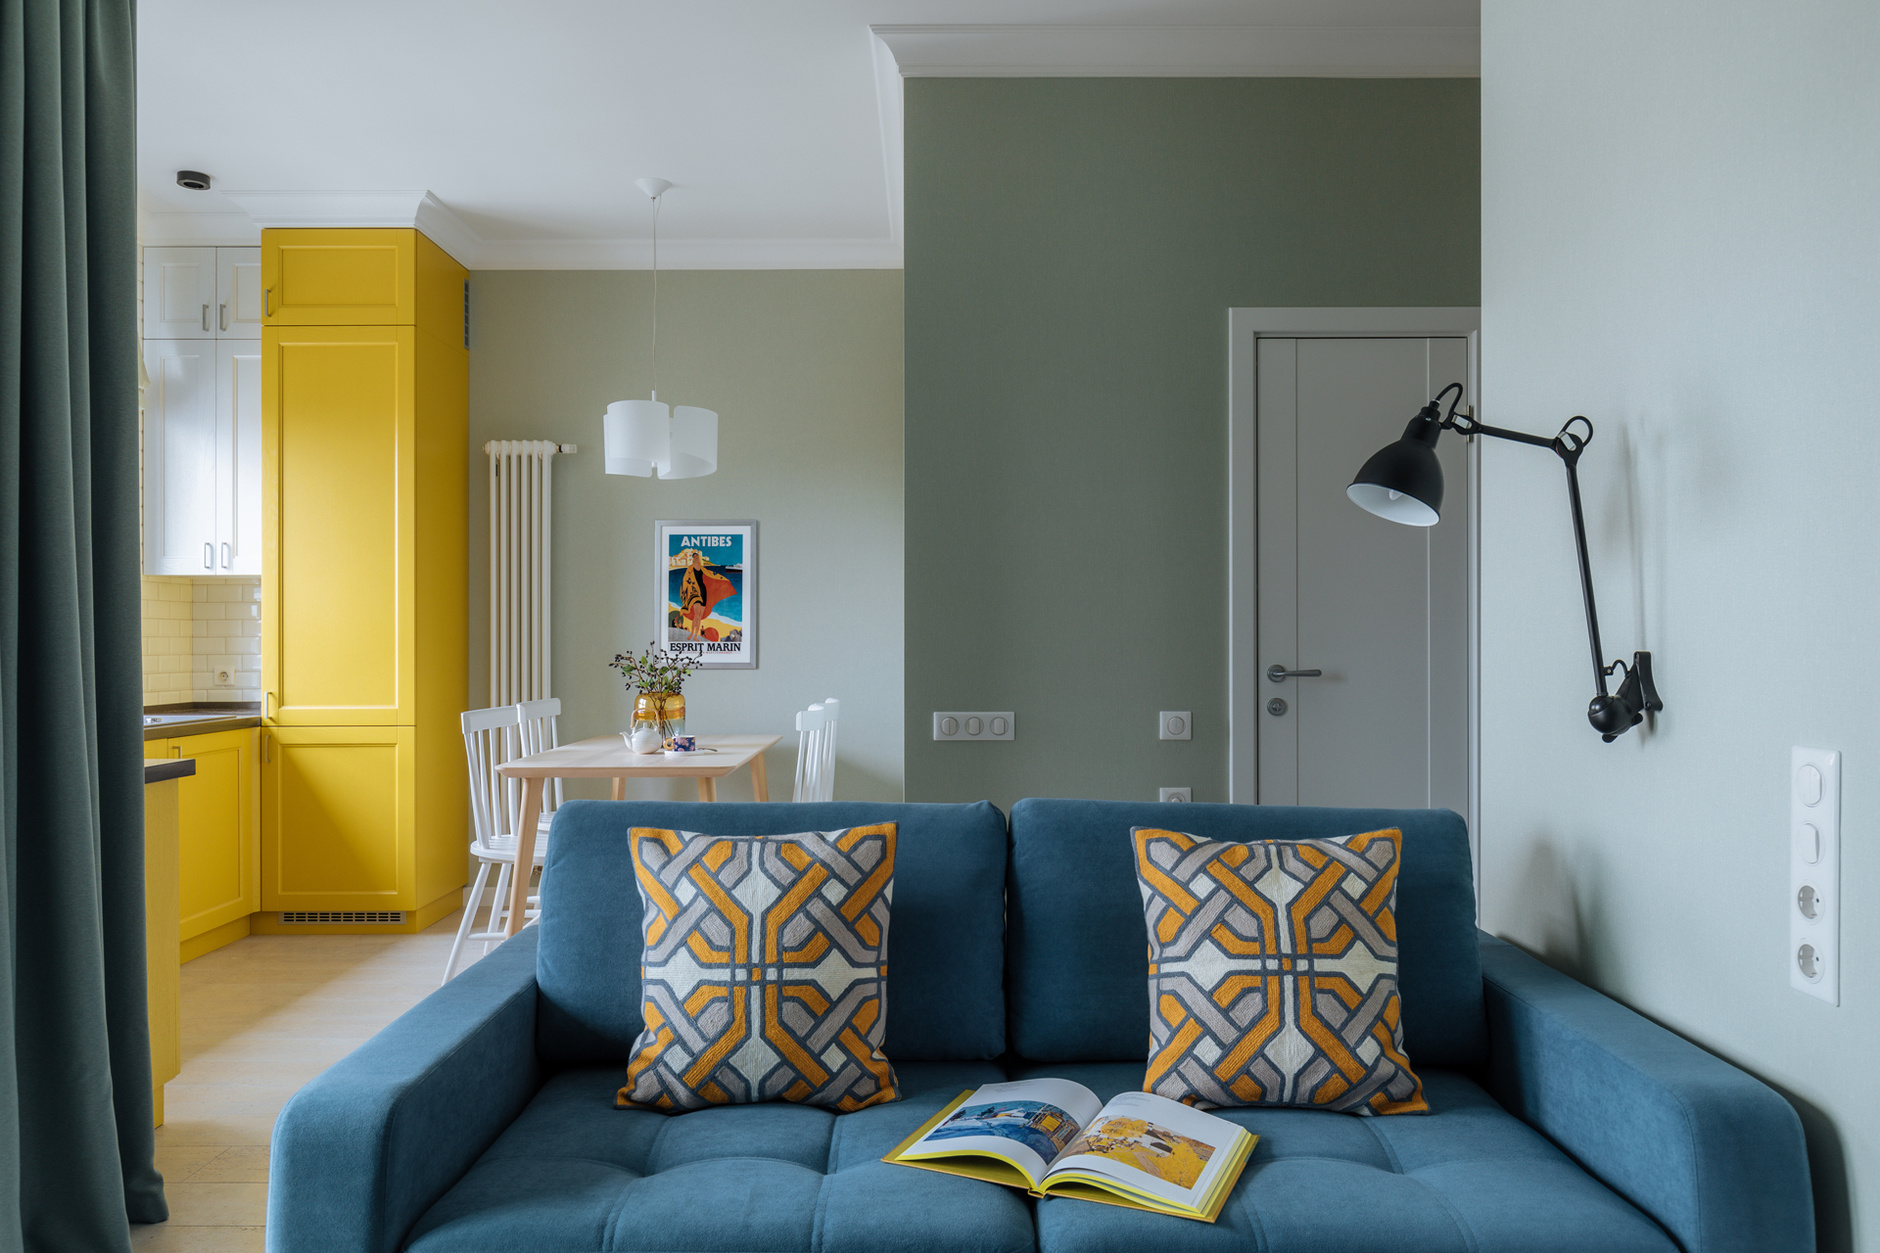 Синий цвет в интерьере: (55+ фото) идеи оформления комнаты | Ортограф | Дзен